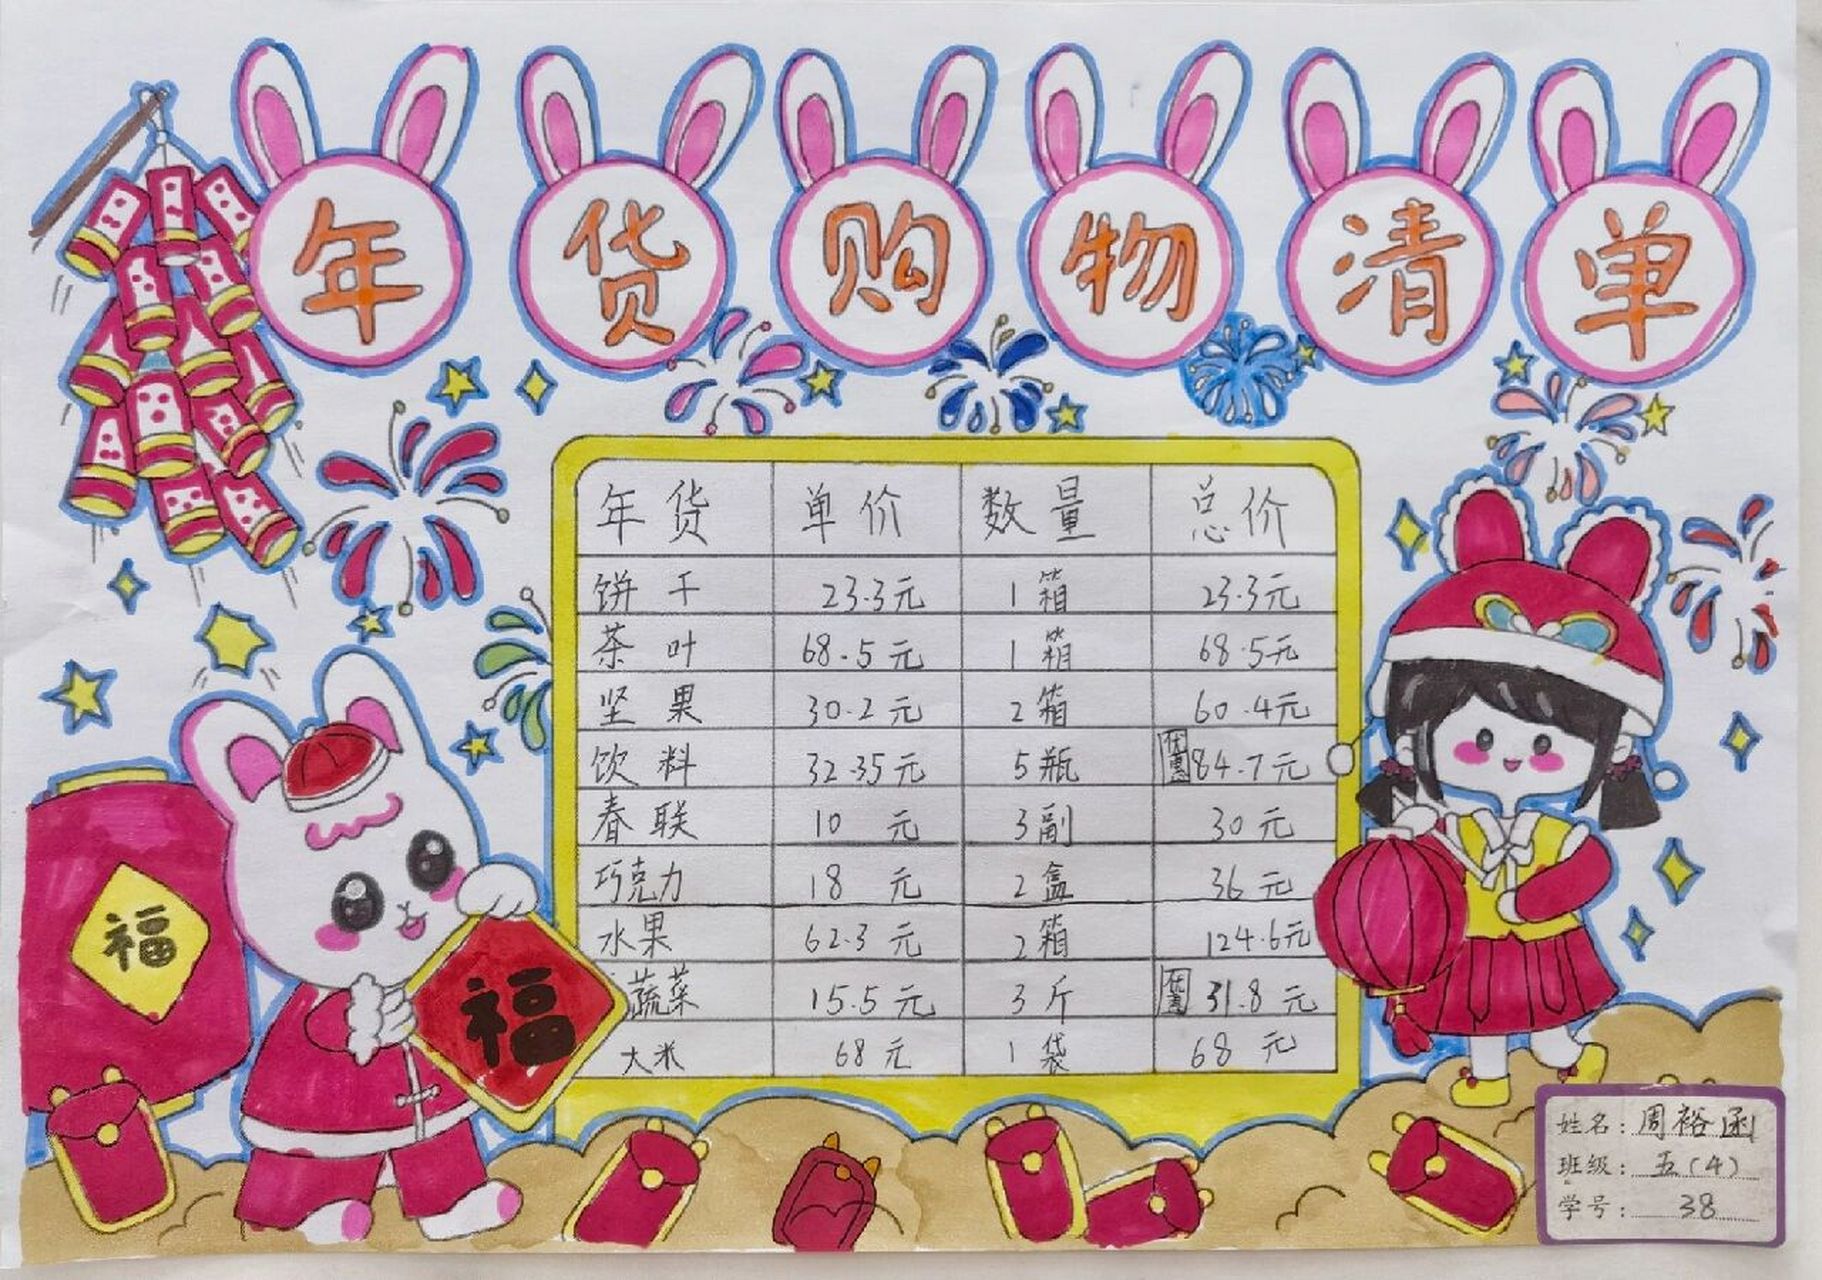 春节开支统计图手抄报图片